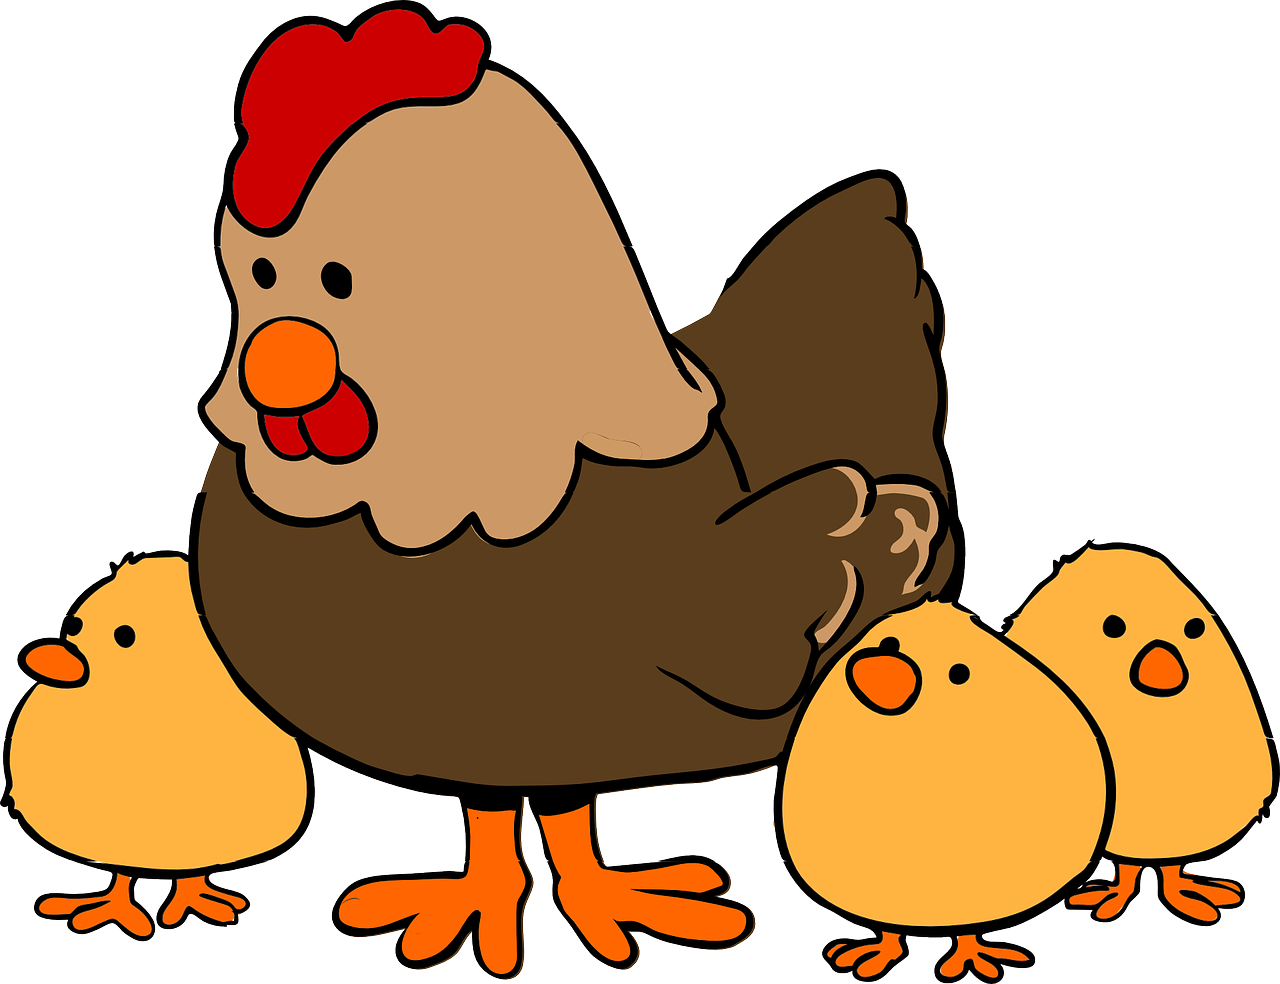 ¿Qué tipo de reproducción es la gallinas?